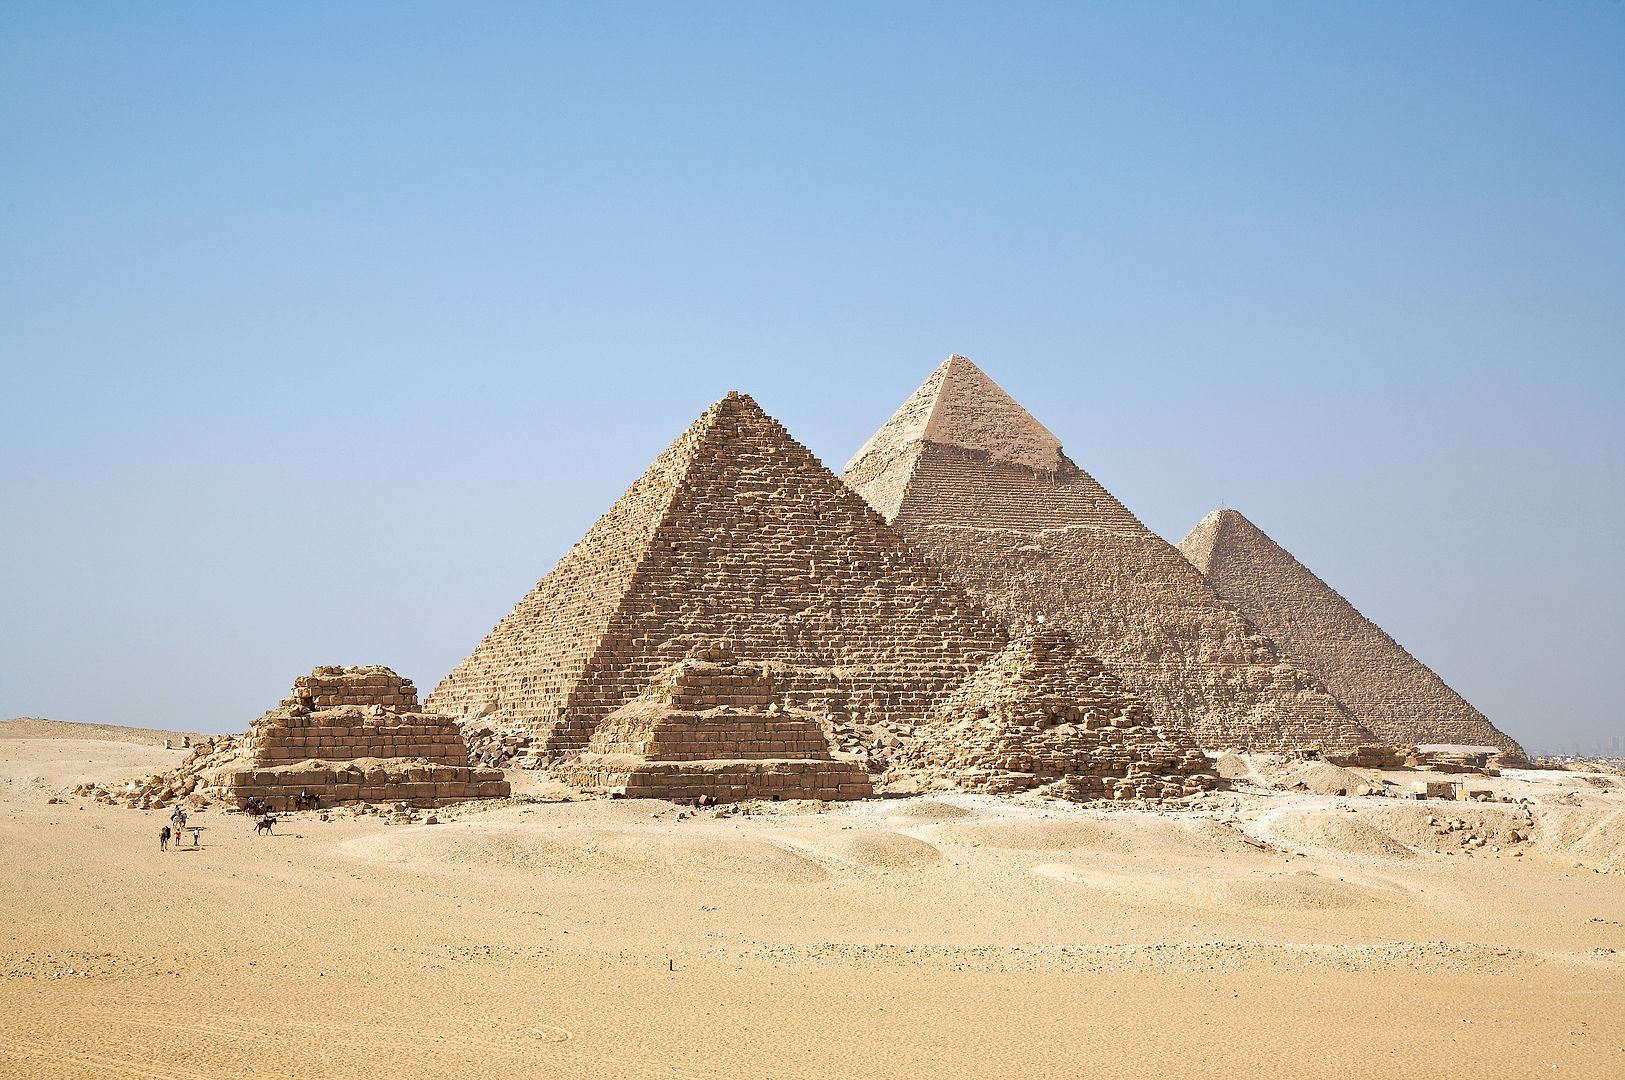 أهرامات الجيزة و أبو الهول خلفيات وصور عالية الجودة Pyramids of Giza and the Sphinx HD 0613